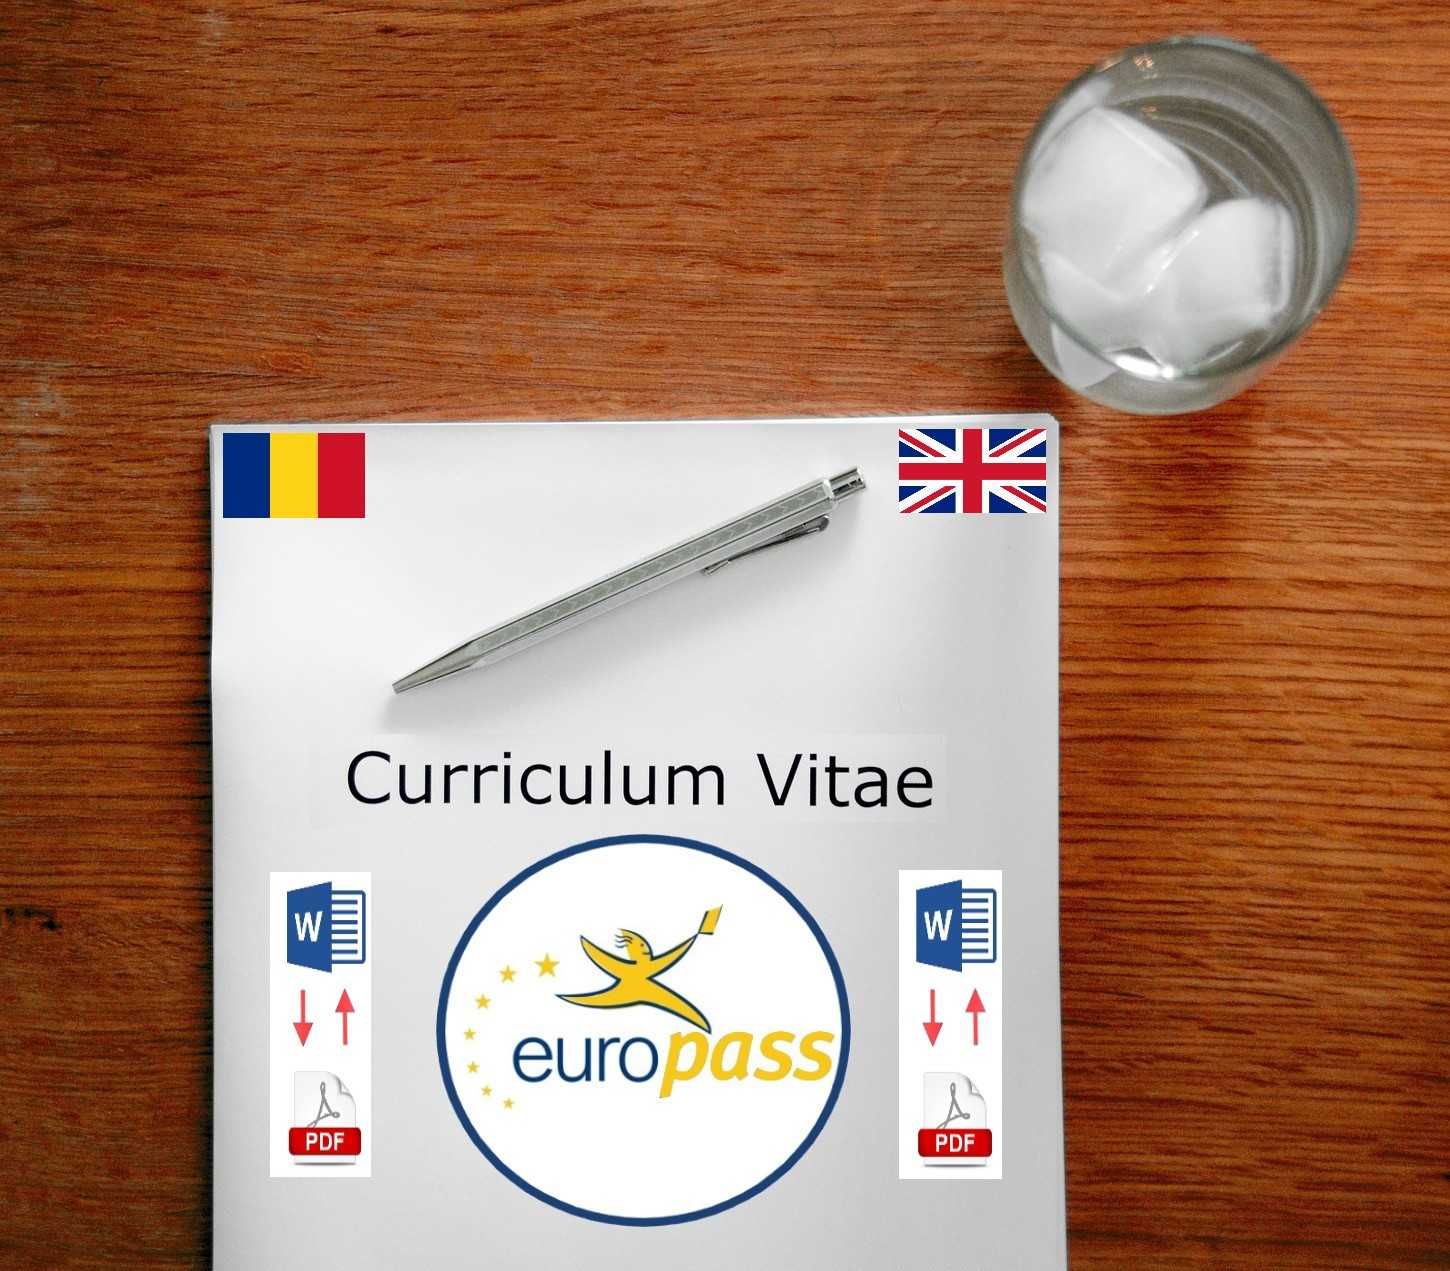 cais|Curriculum Vitae|Curriculum Vitae Europass|Curriculum Vitae word|